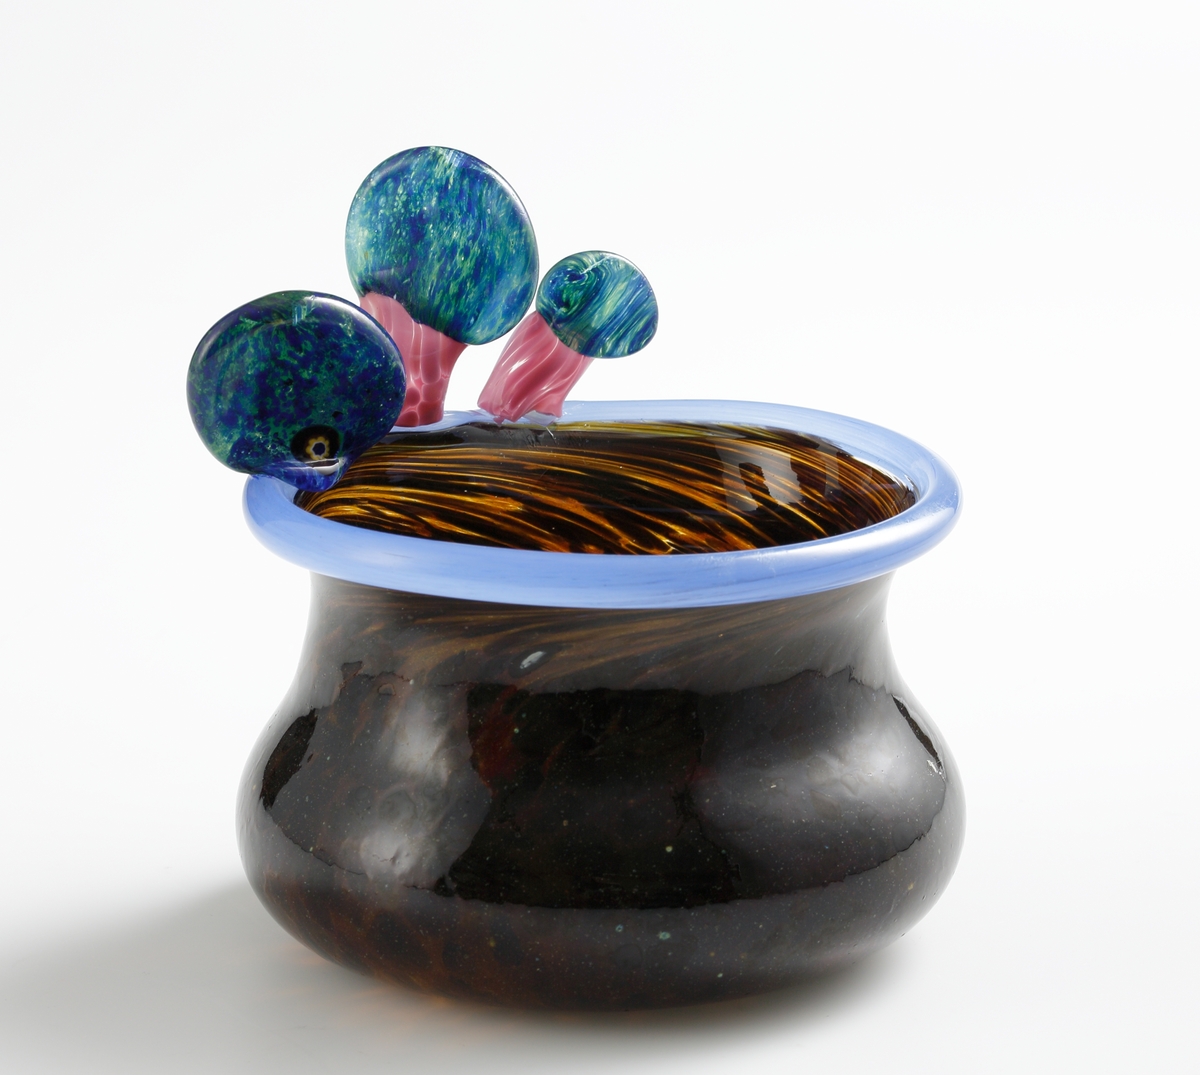 Skål i brunfläckigt glas med blå mynningskant och skulpterade "svampar" i rosa och grönblått.